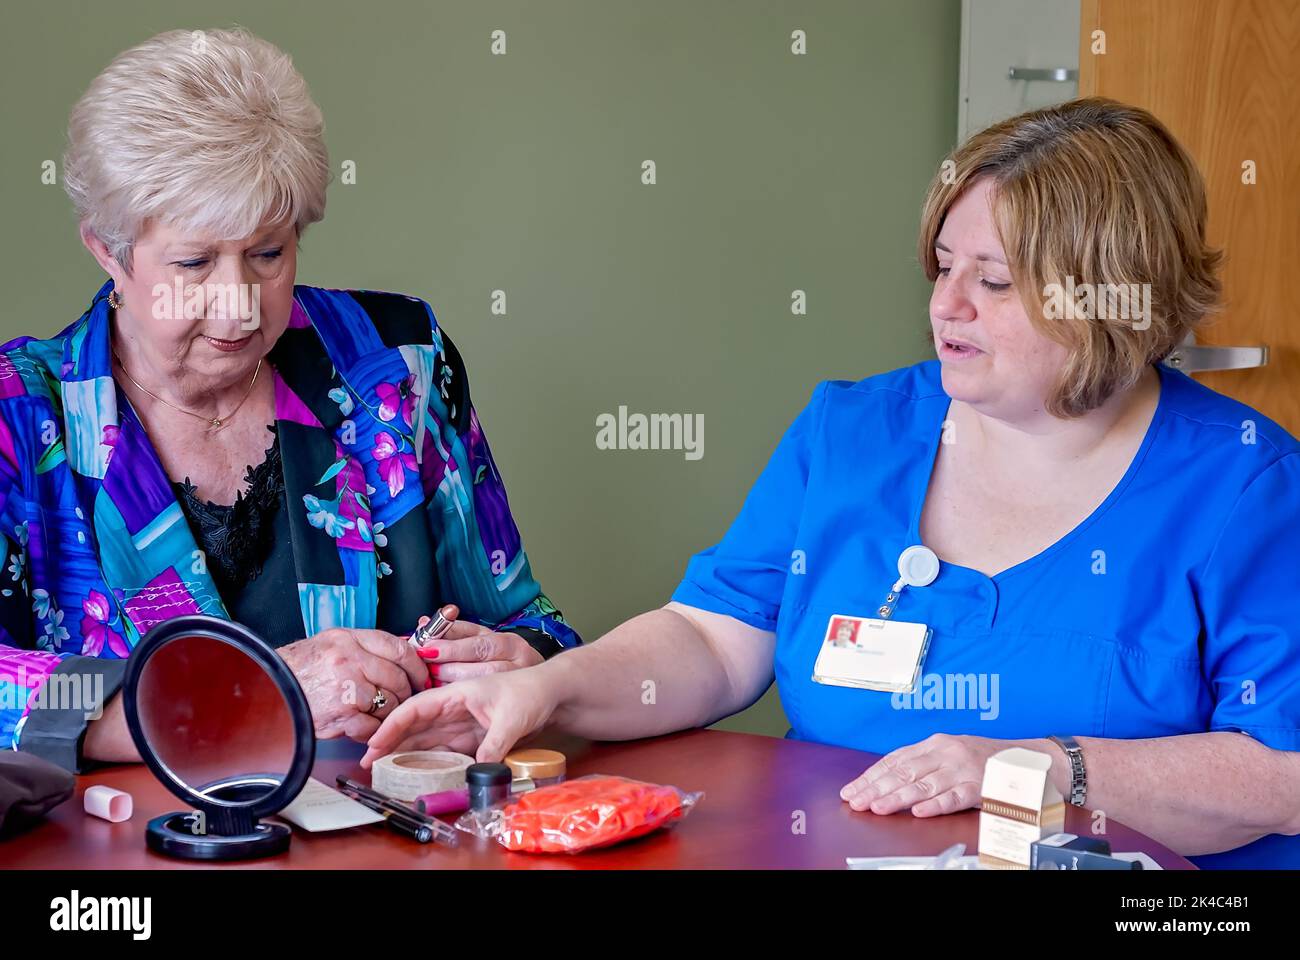 Un paziente oncologico discute di cosmetici con un infermiere registrato durante il “Look Good ... Programma "Feel Better" presso il Baptist Memorial Hospital di Columbus. Foto Stock